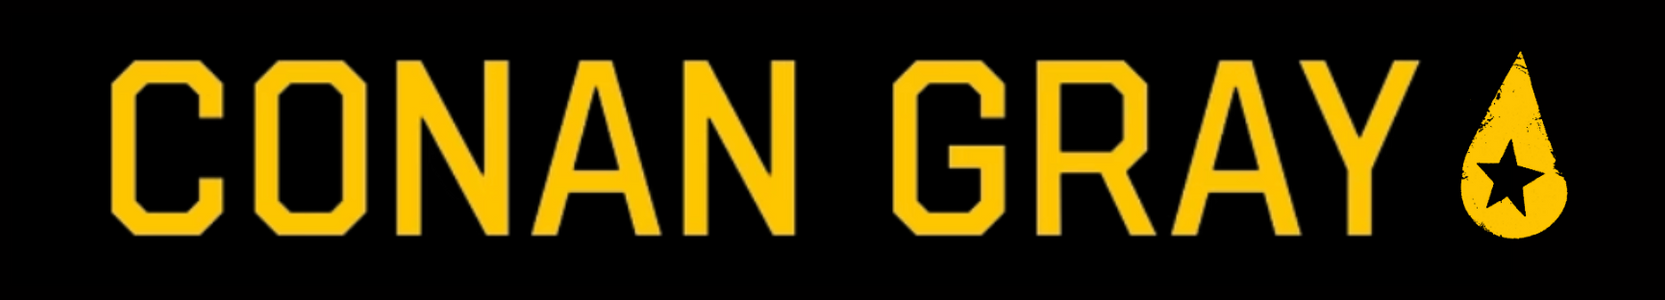 Conan Gray Official Store logo